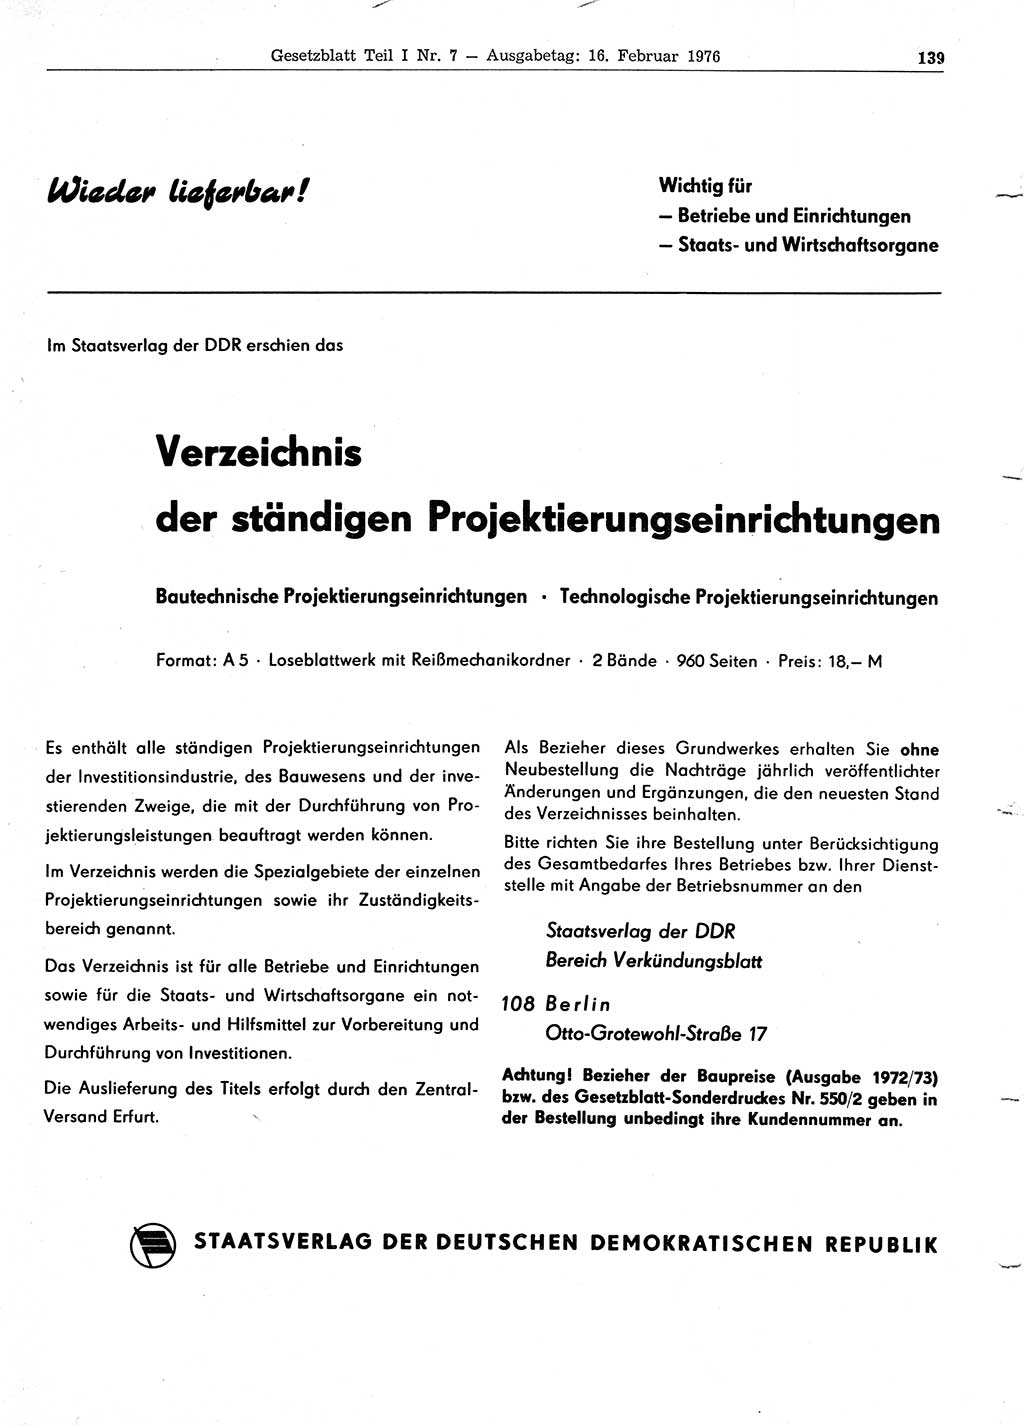 Gesetzblatt (GBl.) der Deutschen Demokratischen Republik (DDR) Teil Ⅰ 1976, Seite 139 (GBl. DDR Ⅰ 1976, S. 139)